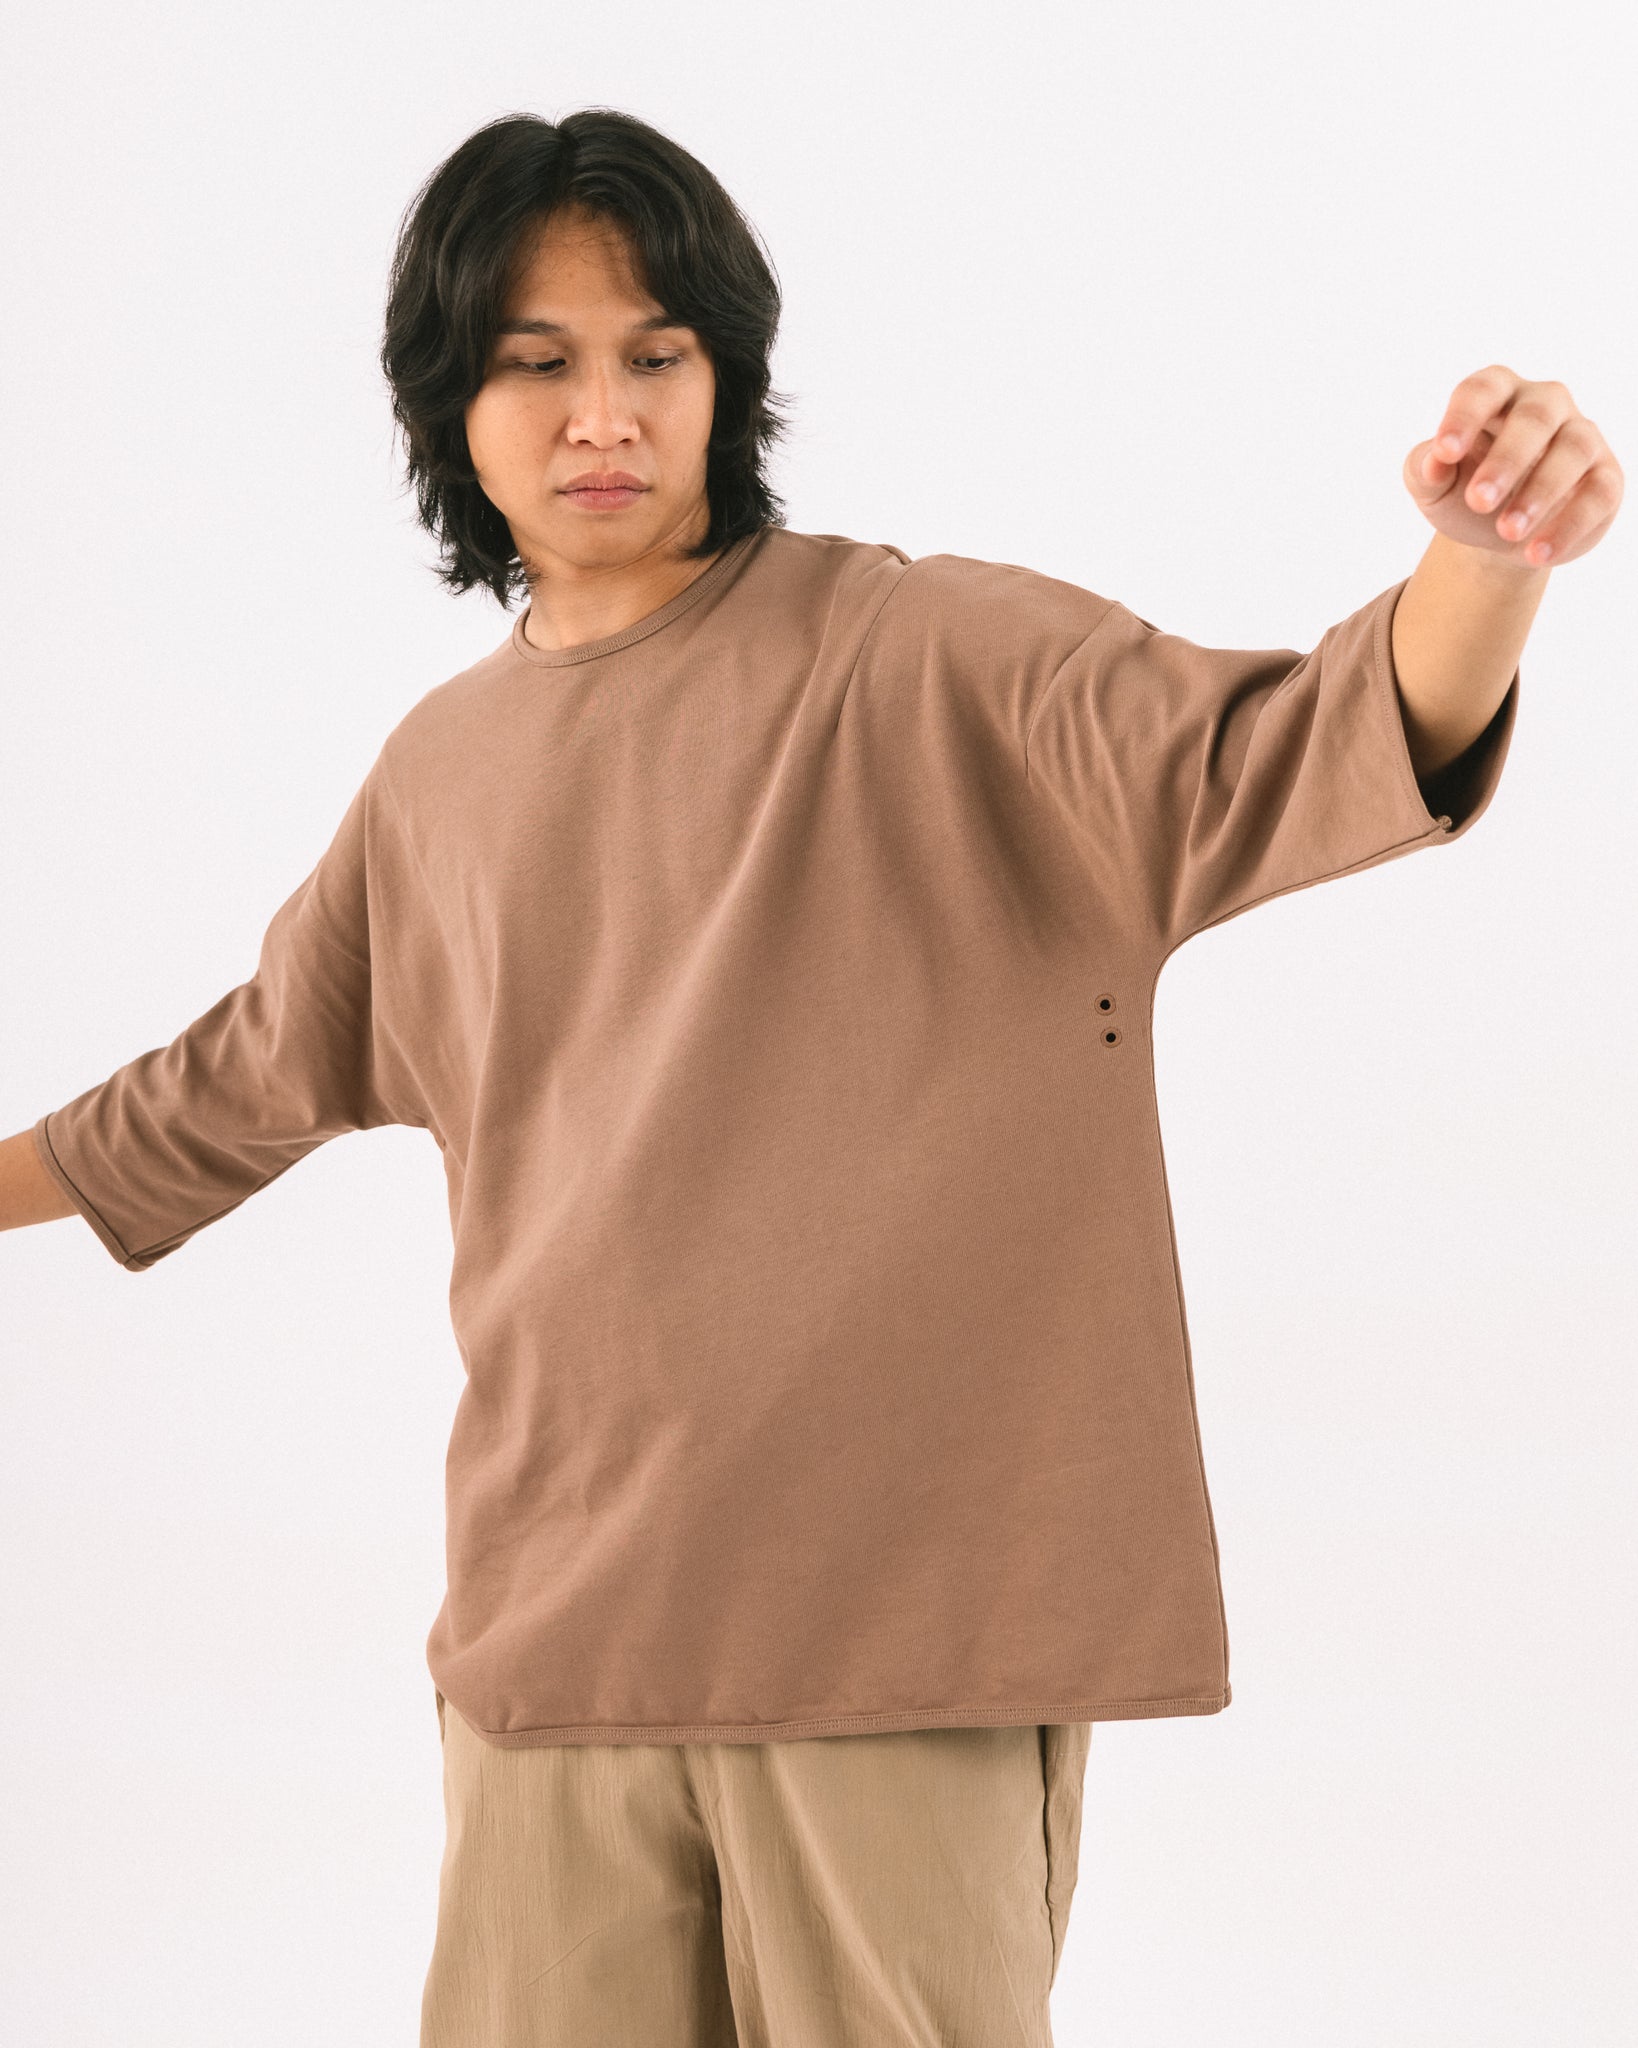 Unisex: Brown T (Long Sleeve)